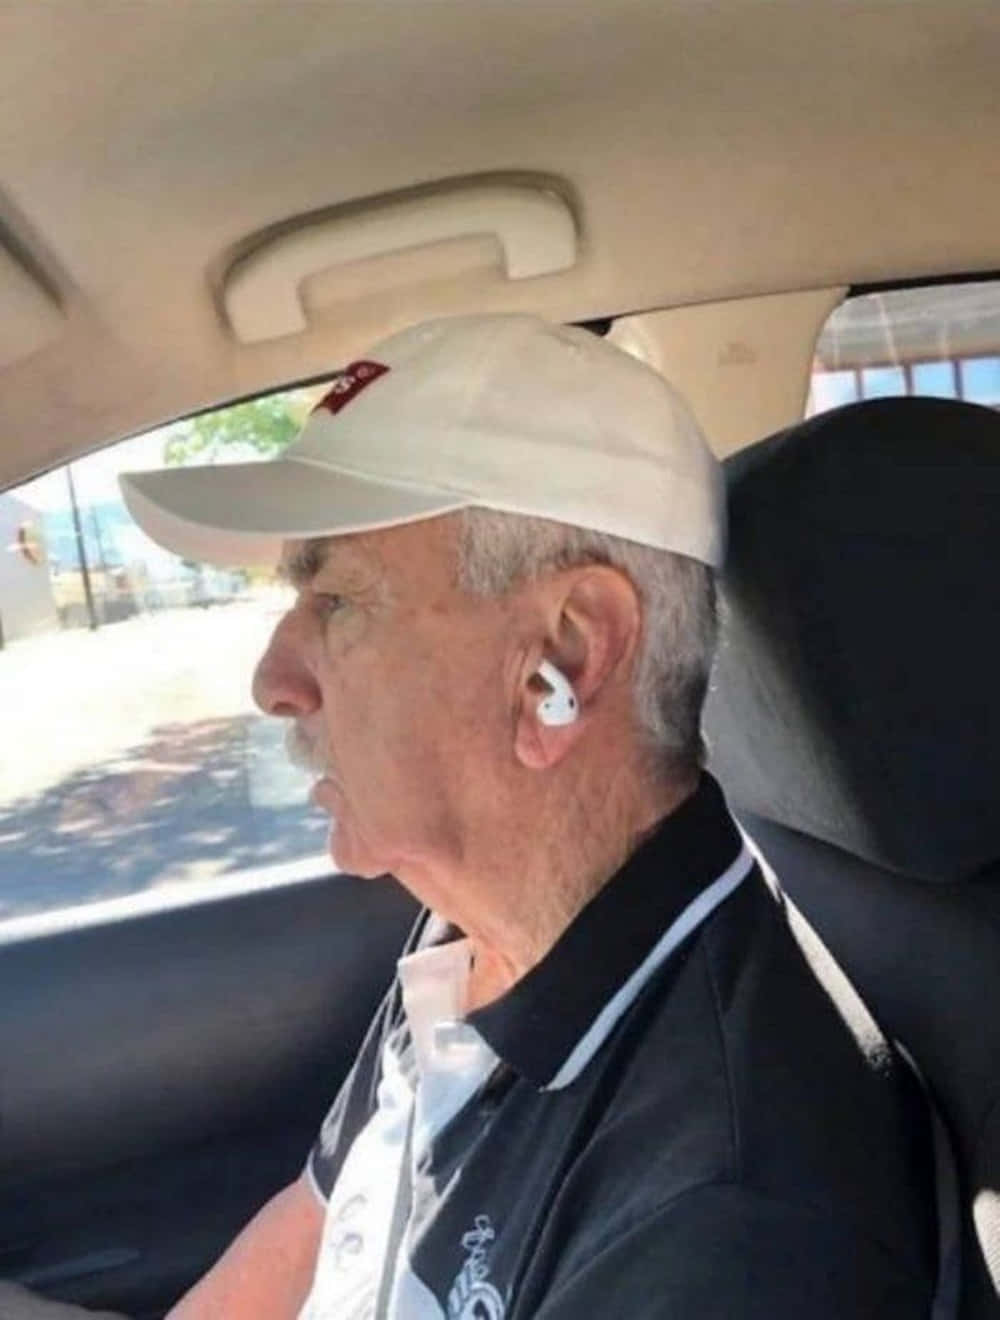 Lustigesdummes Bild Von Einem Alten Mann Mit Kopfhörern